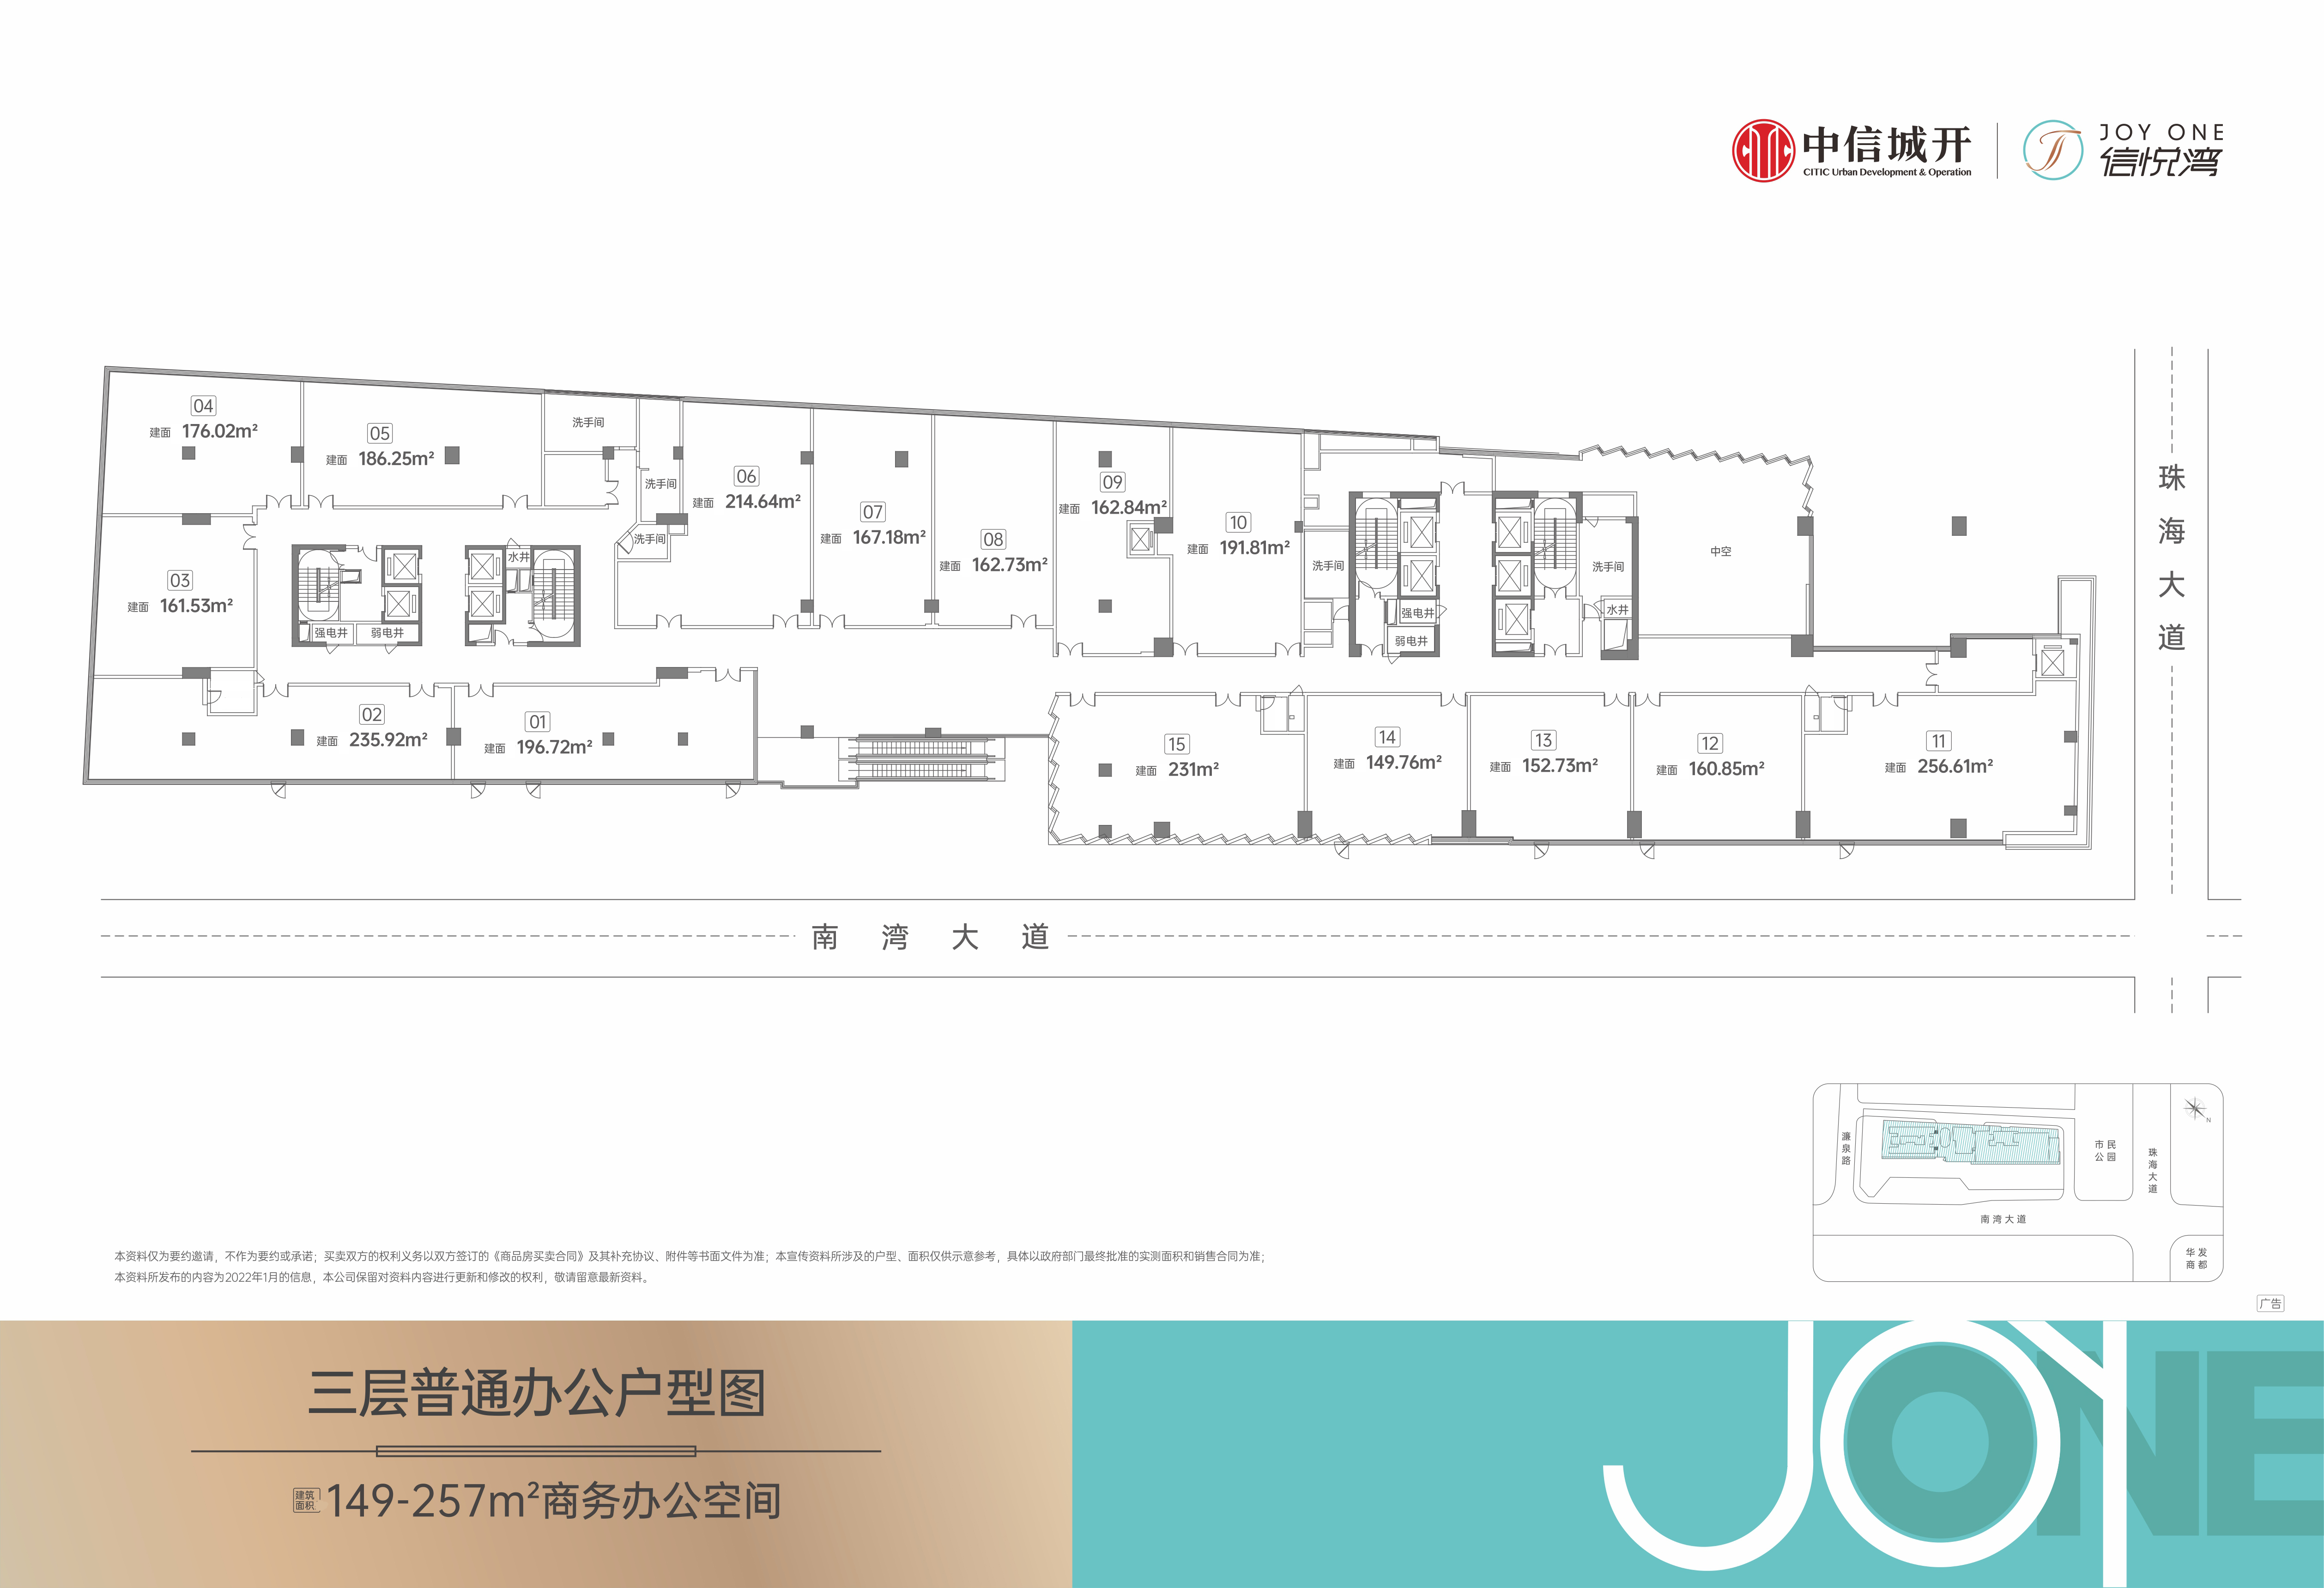 信悦湾大厦 商业办公 3层普通办公户型平面图